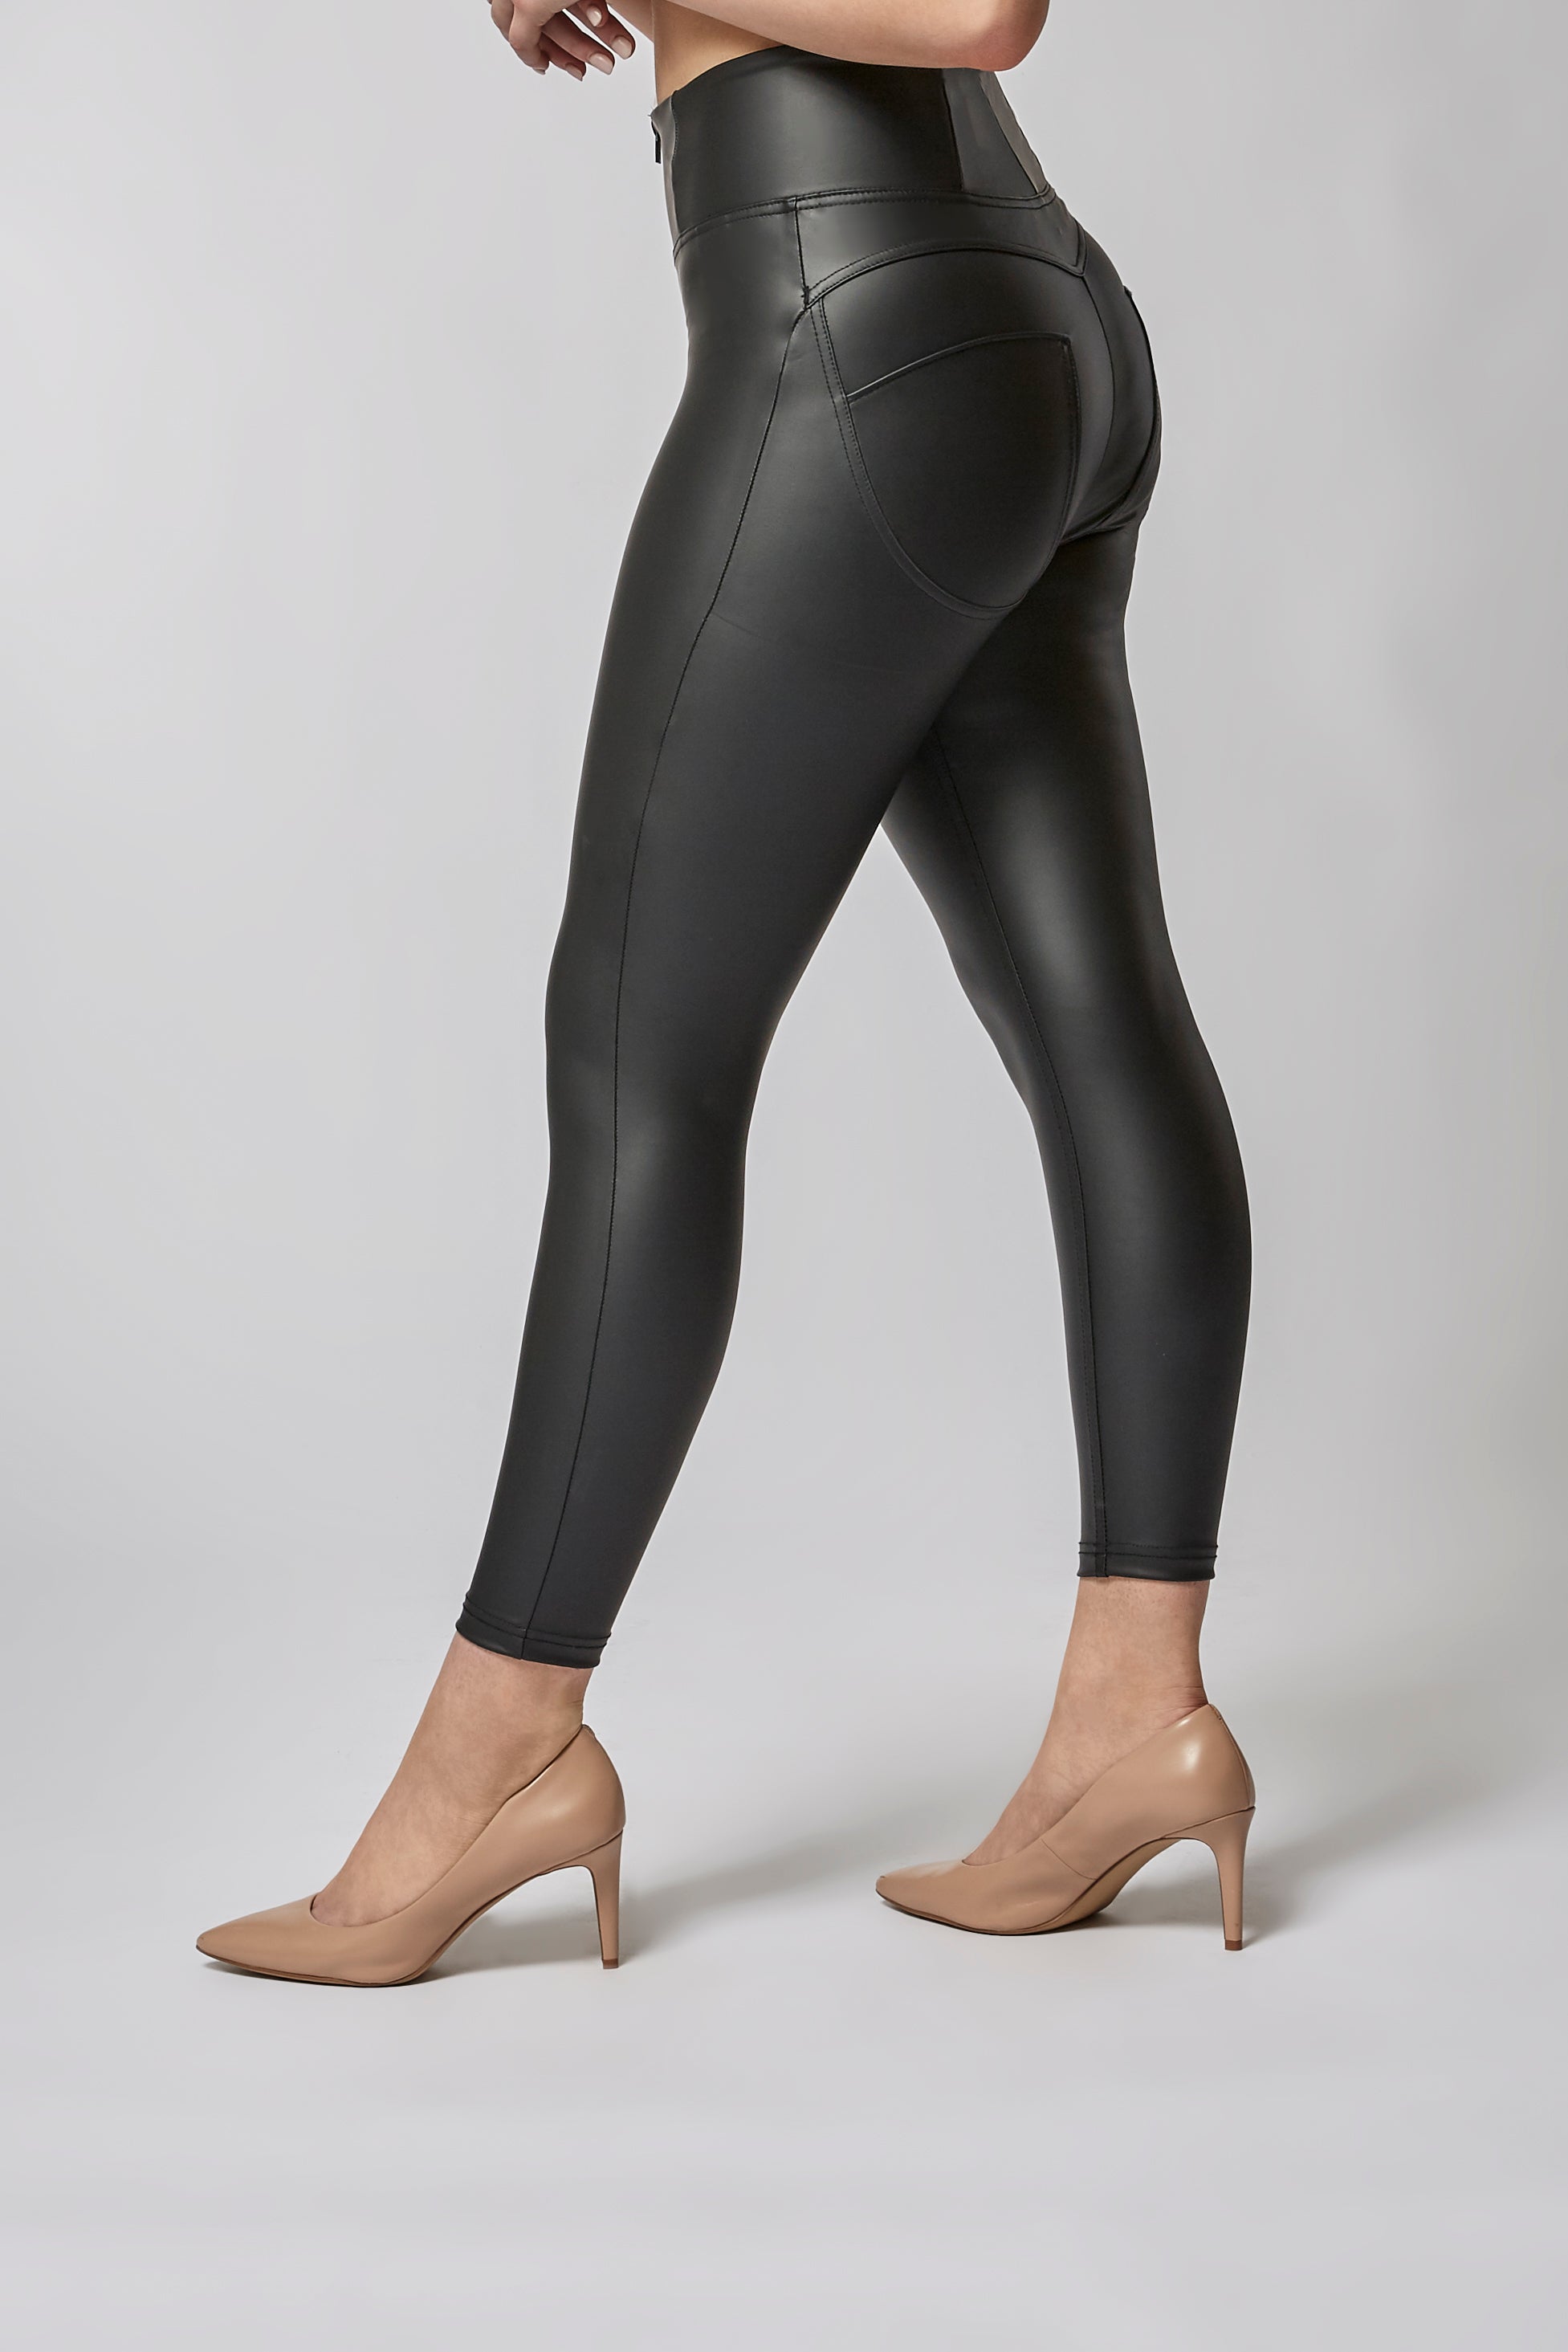 SPANX, Pants & Jumpsuits, Spanx Womens Fauxleather Black Legging High  Rise Contour Waist Pants Black L